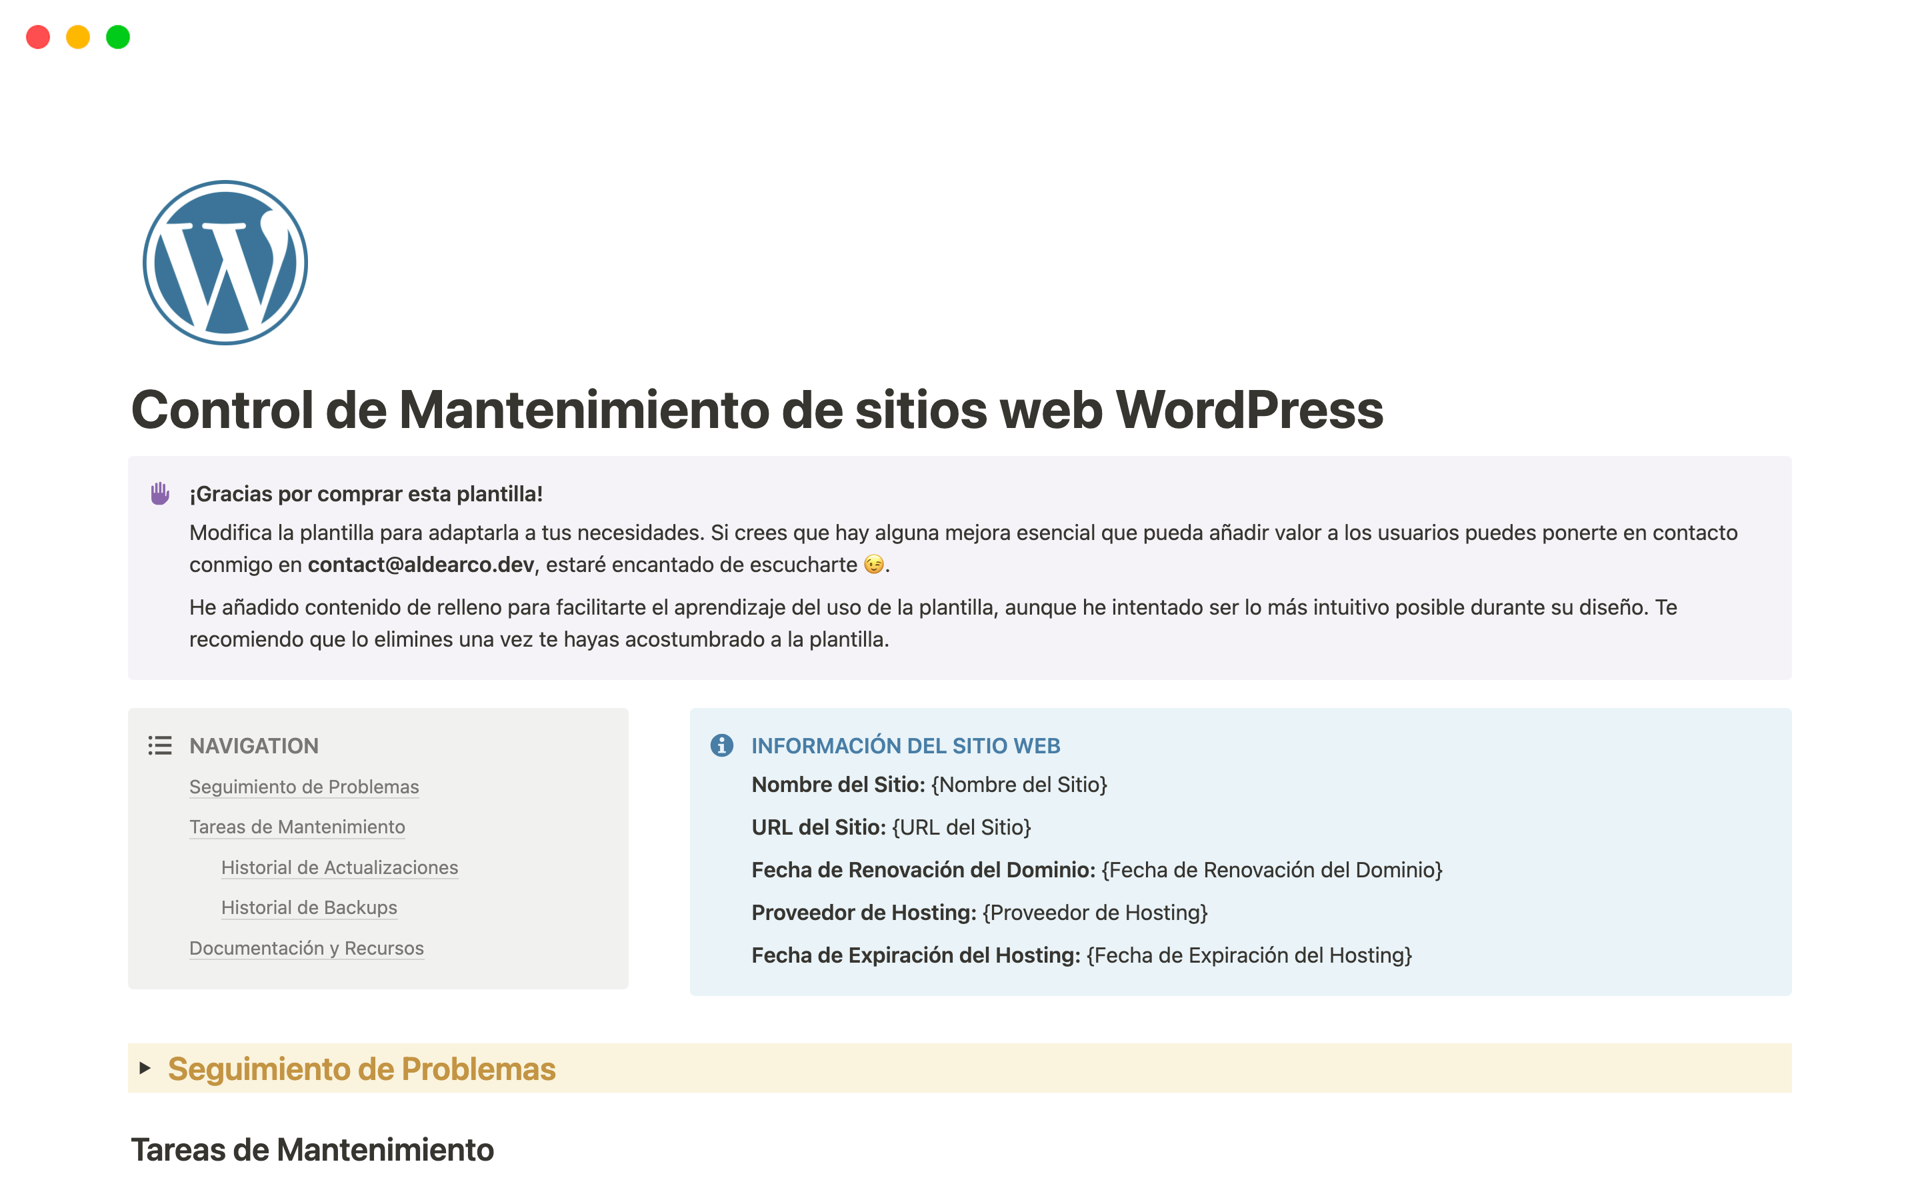 Vista previa de una plantilla para Control de Mantenimiento de sitios web WordPress